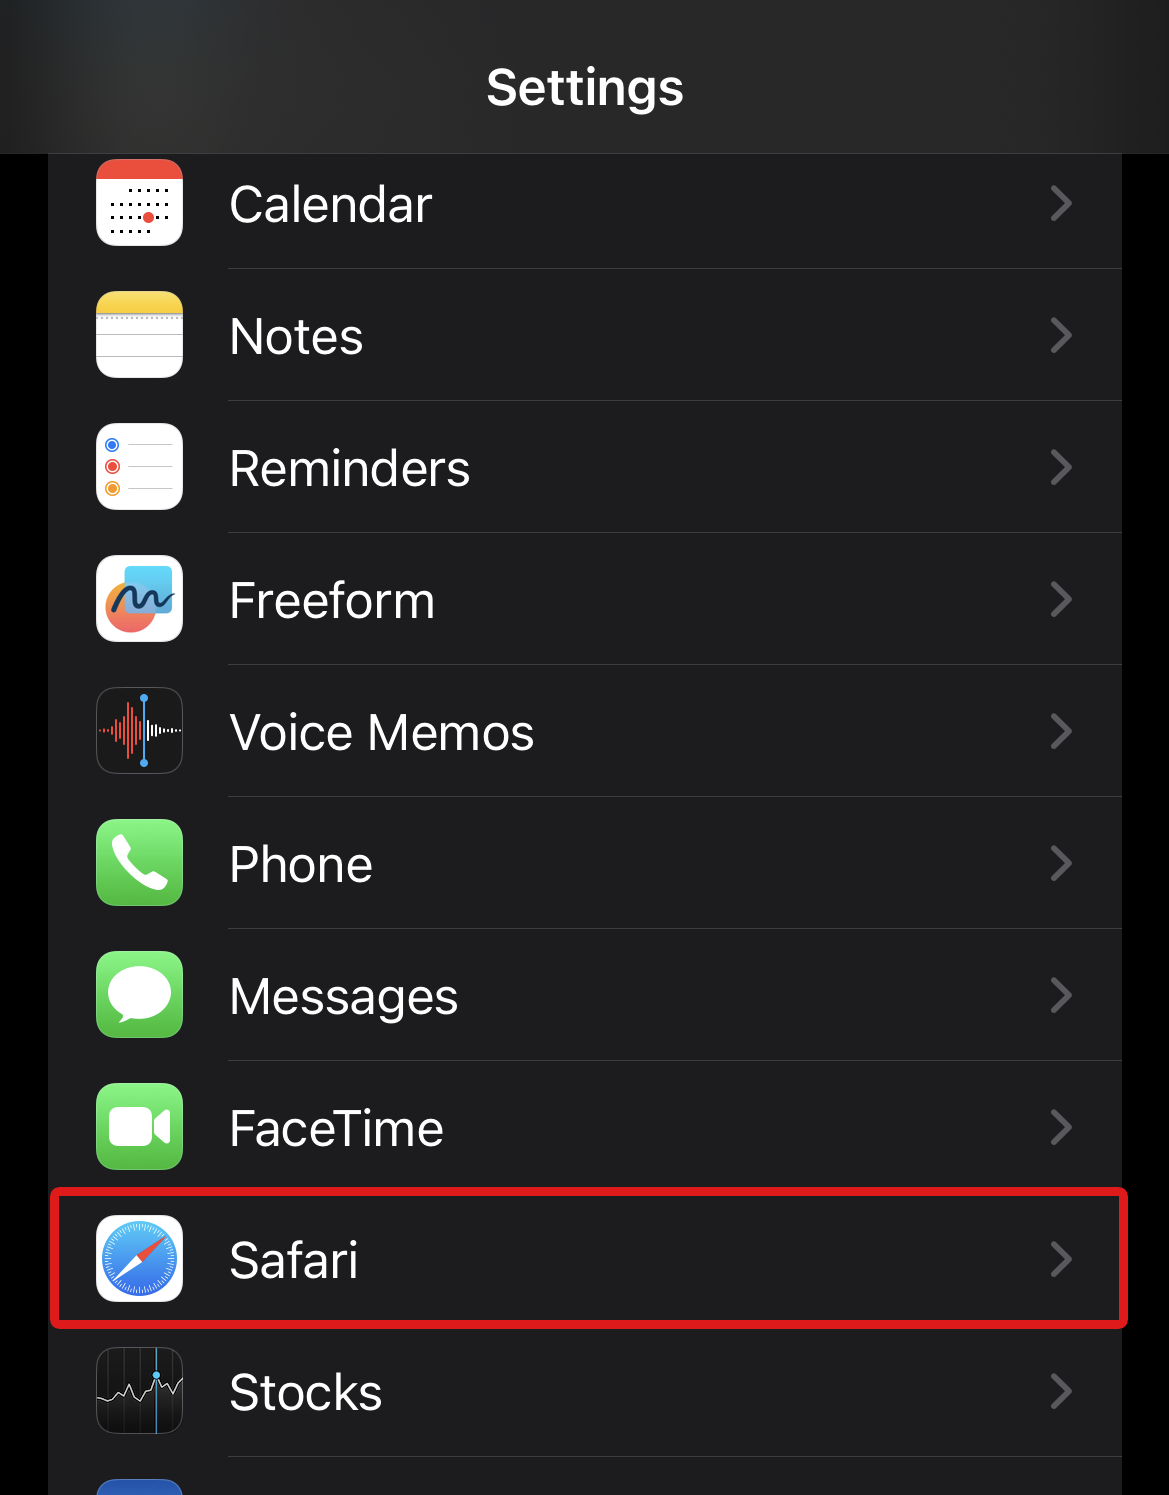 Safari icon in iPhone settings